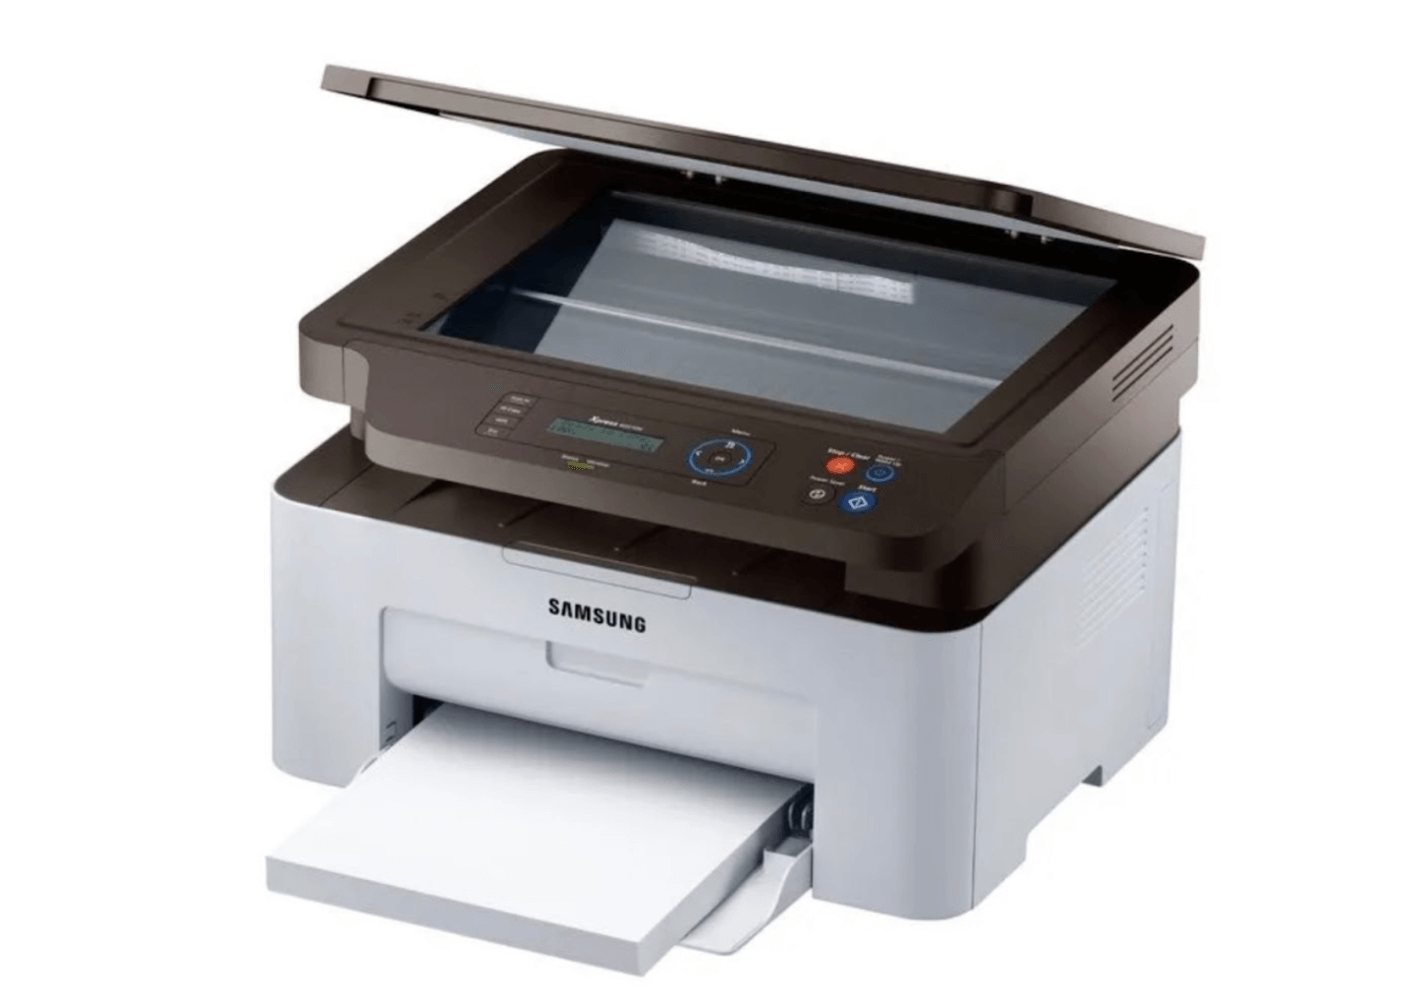 Reklamna slika Samsung SL-M2070W printera.